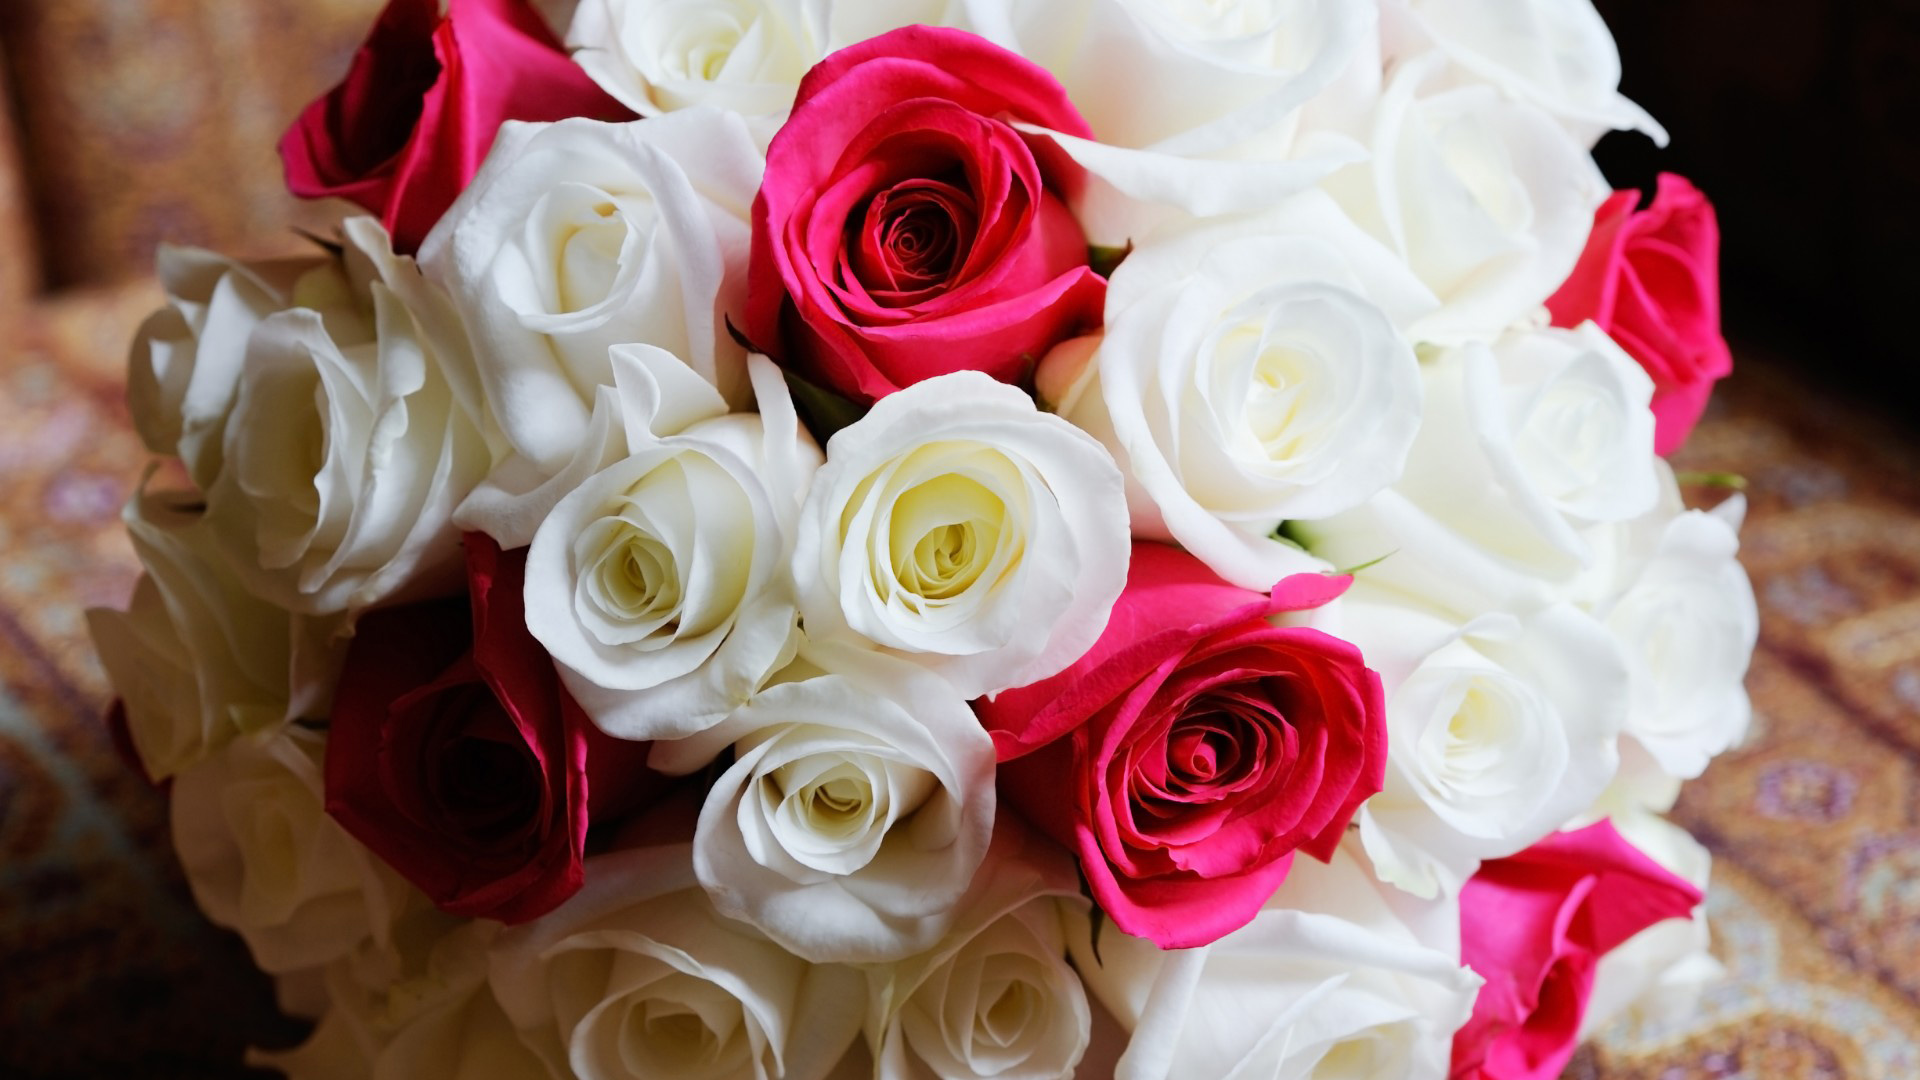 玫瑰,白色,粉红,团花锦簇,桌面壁纸